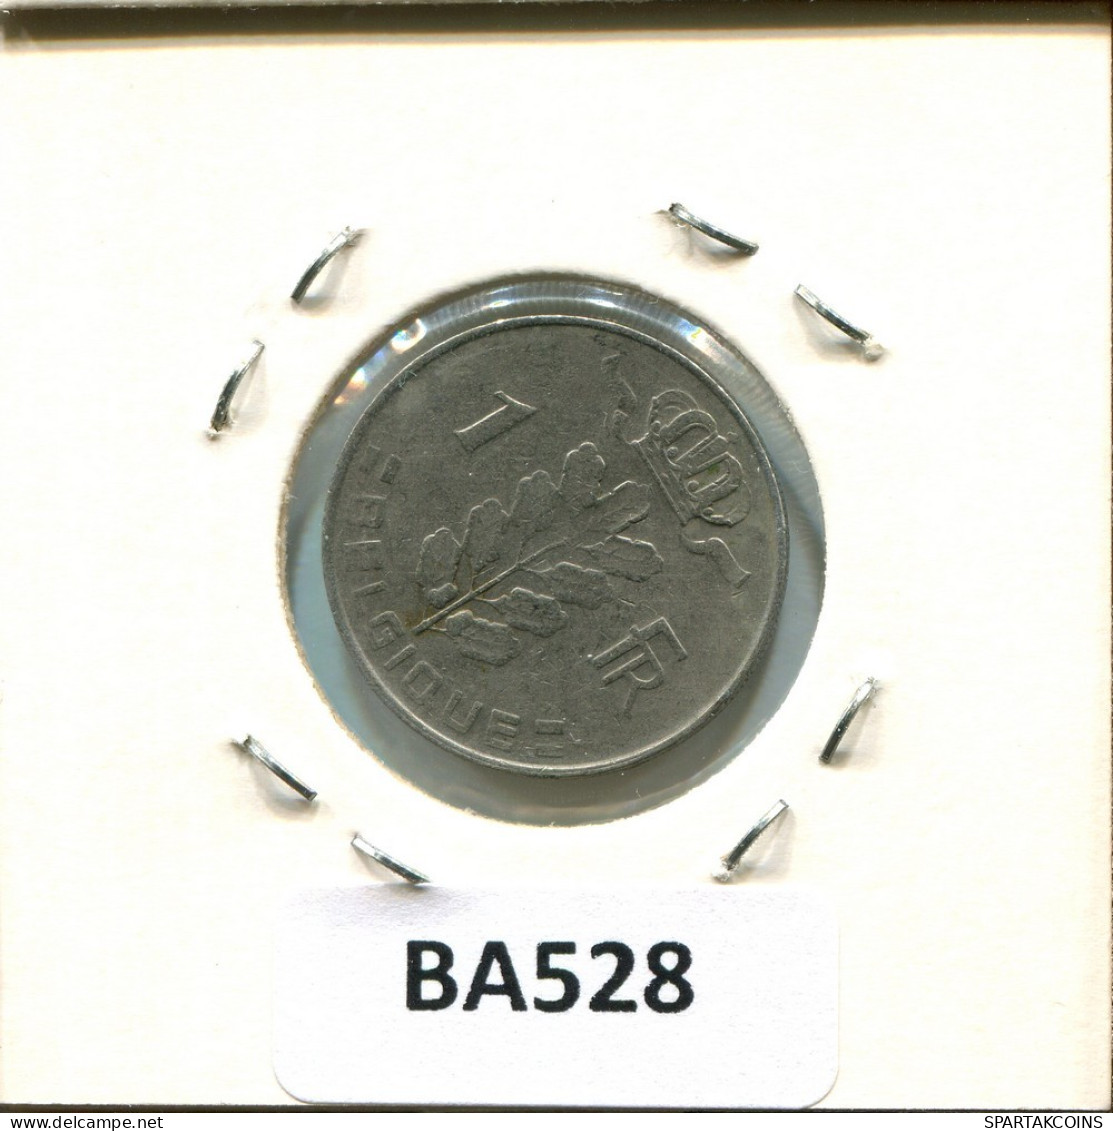 1 FRANC 1973 FRENCH Text BELGIUM Coin #BA528.U.A - 1 Franc